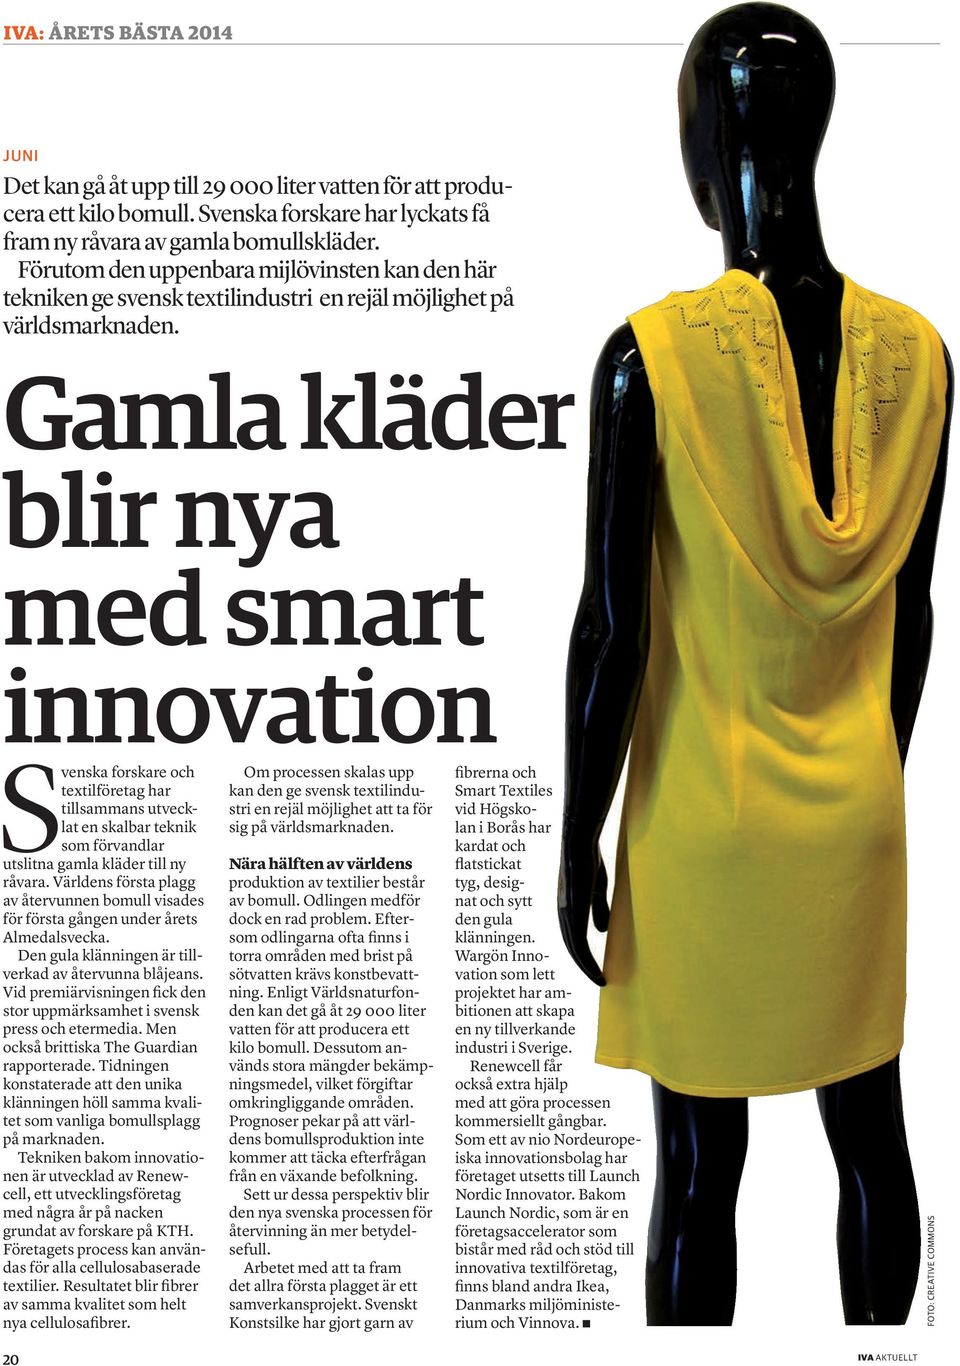 Gamla kläder blir nya med smart innovation Svenska forskare och textilföretag har tillsammans utvecklat en skalbar teknik som förvandlar utslitna gamla kläder till ny råvara.